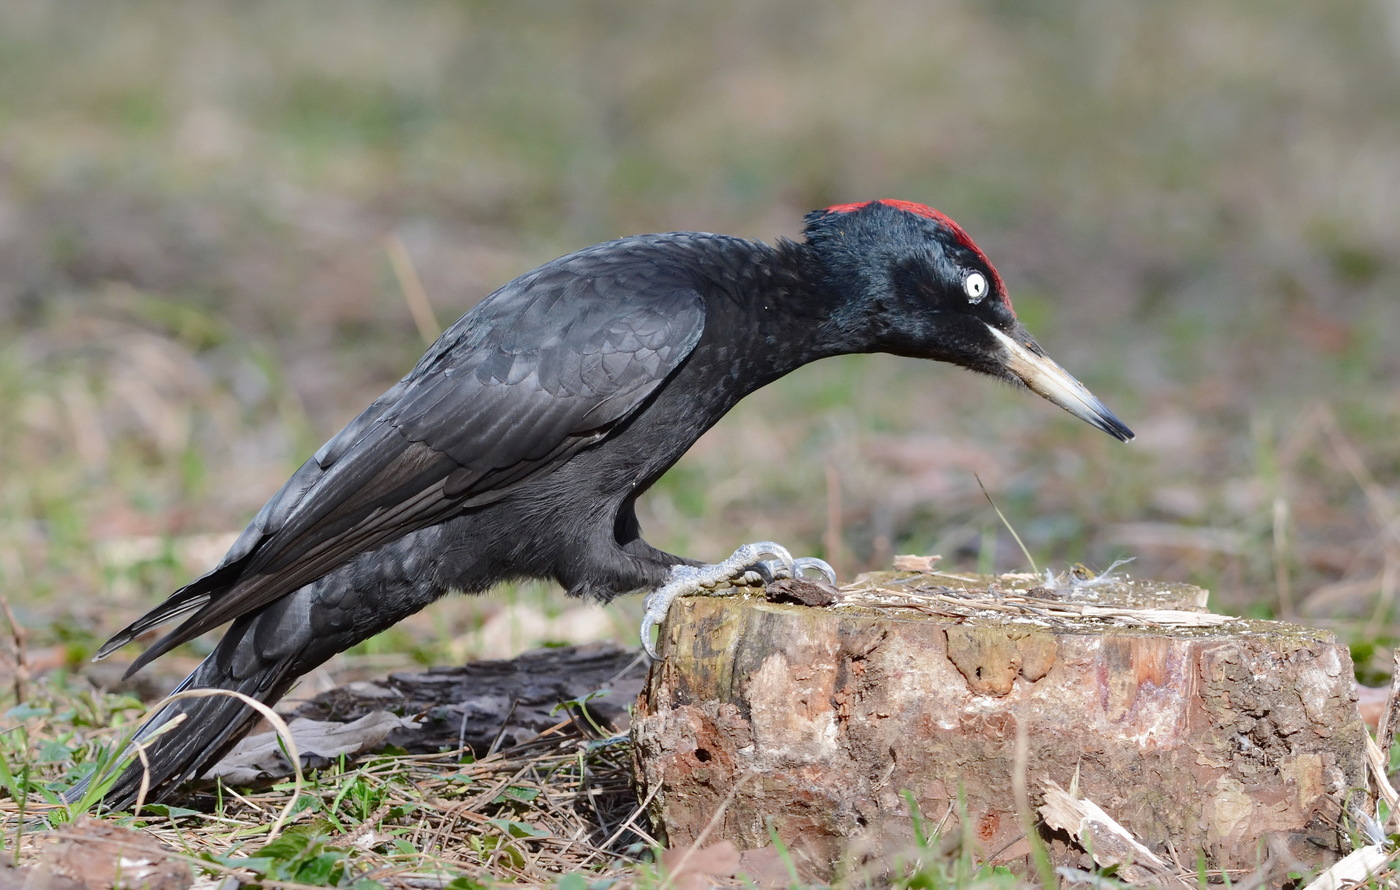 Male black woodpecker on a stump